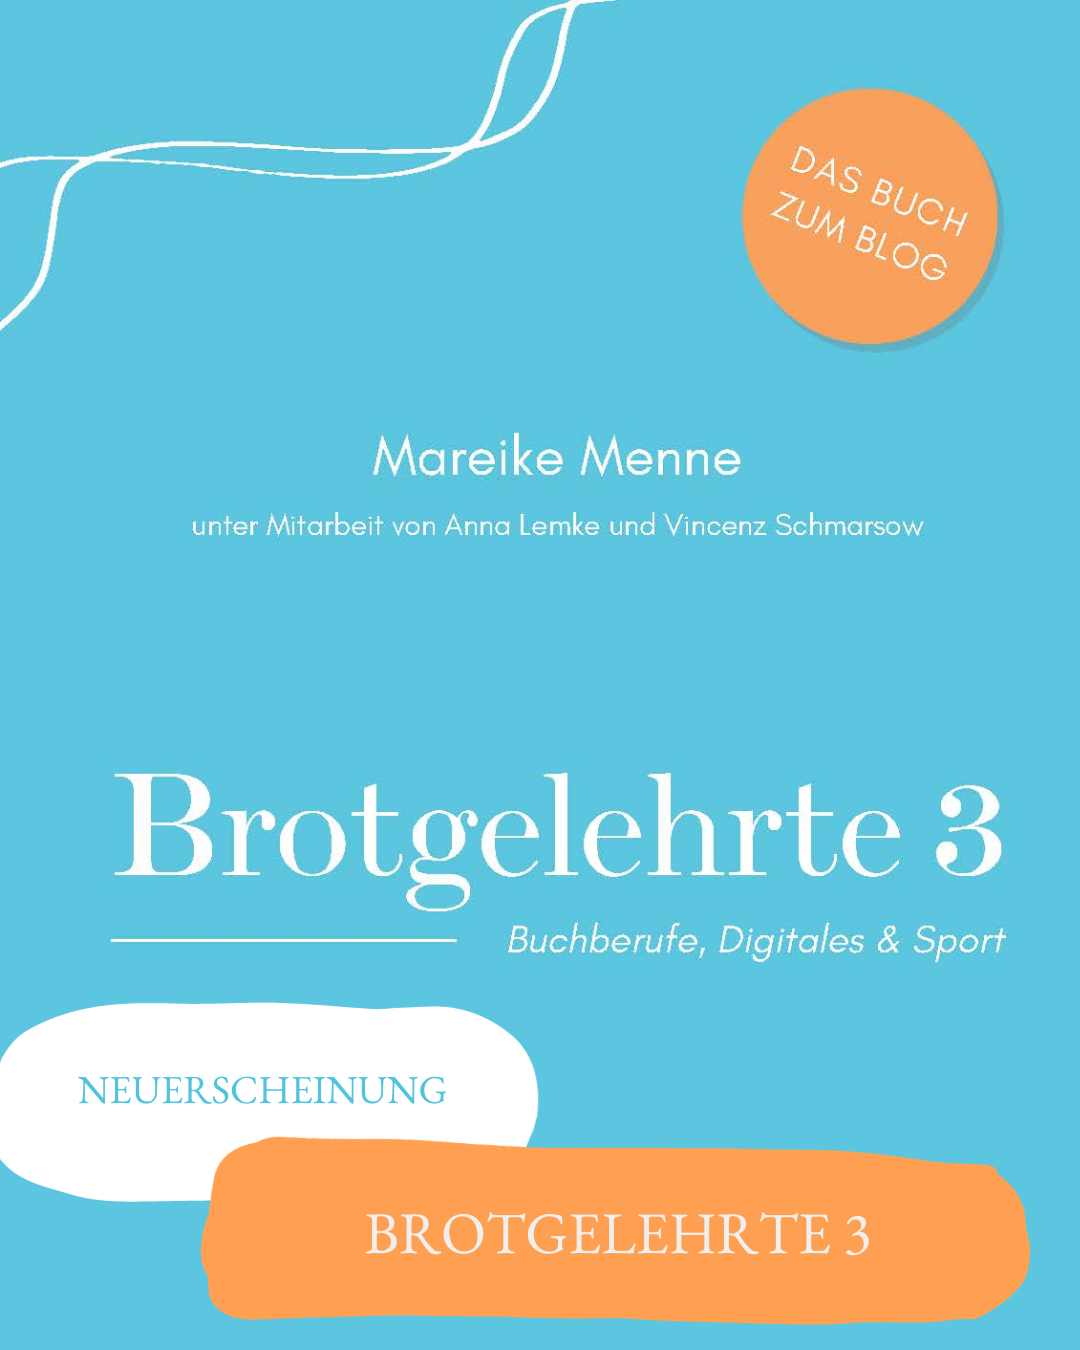 You are currently viewing Neuerscheinung: Brotgelehrte 3